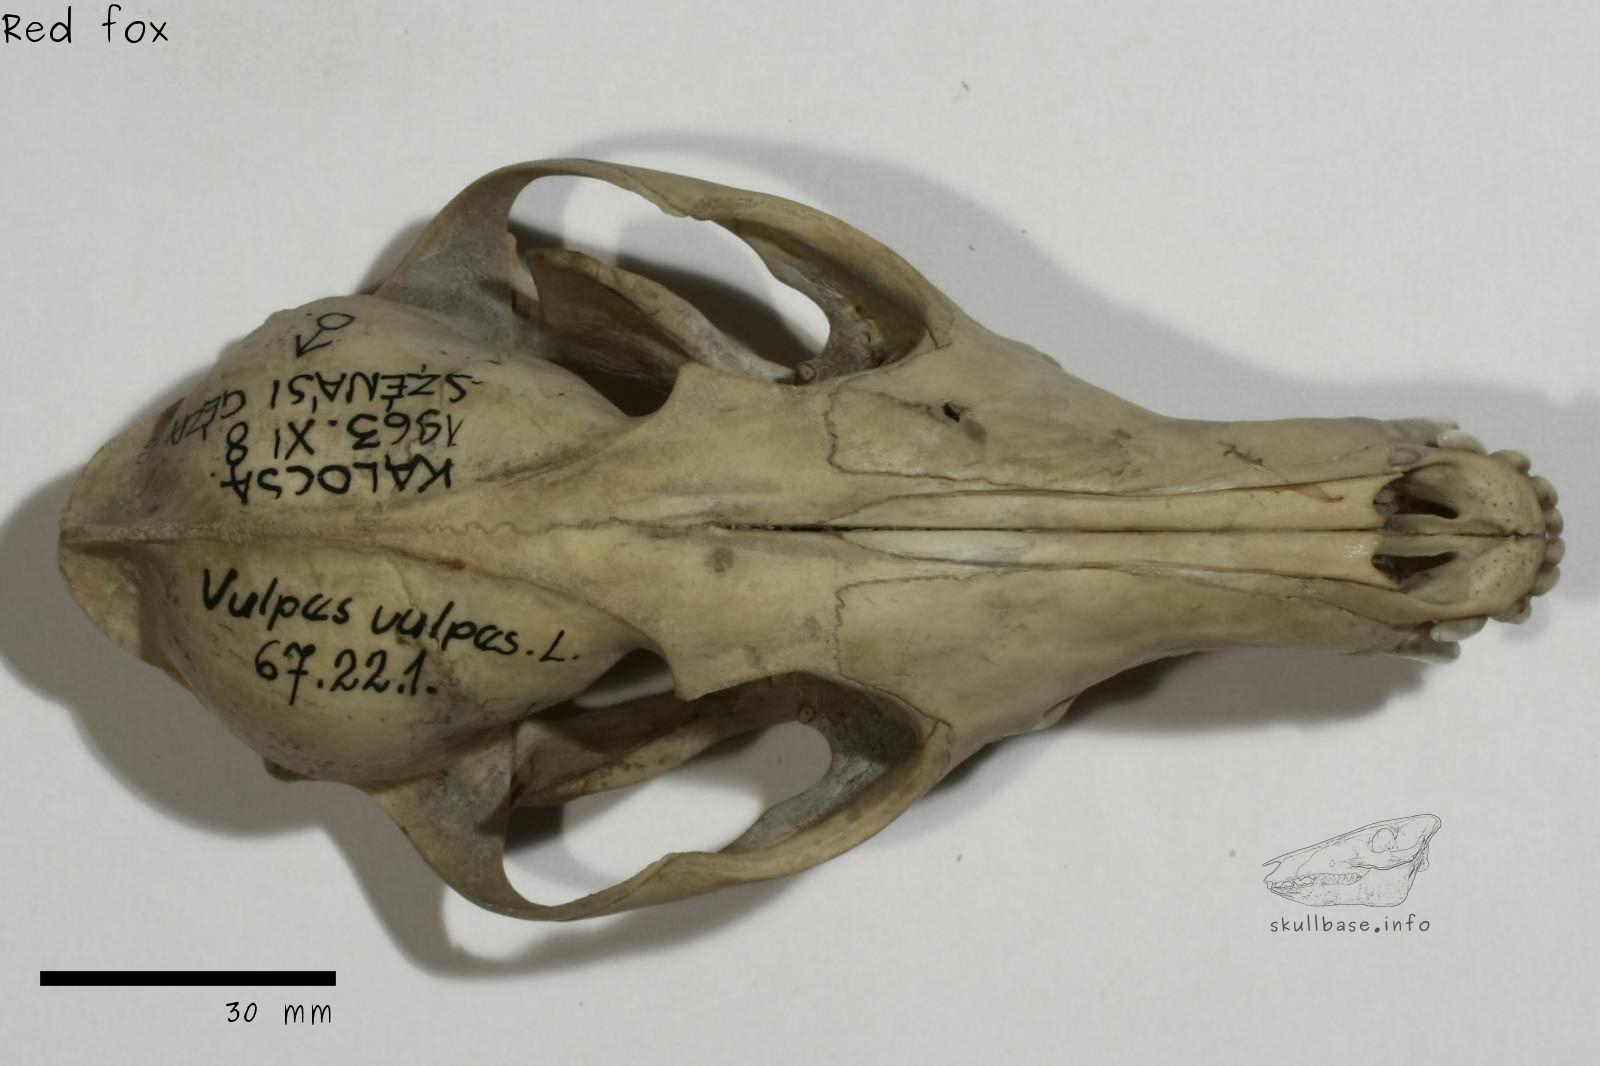 Red fox (Vulpes vulpes) skull dorsal view